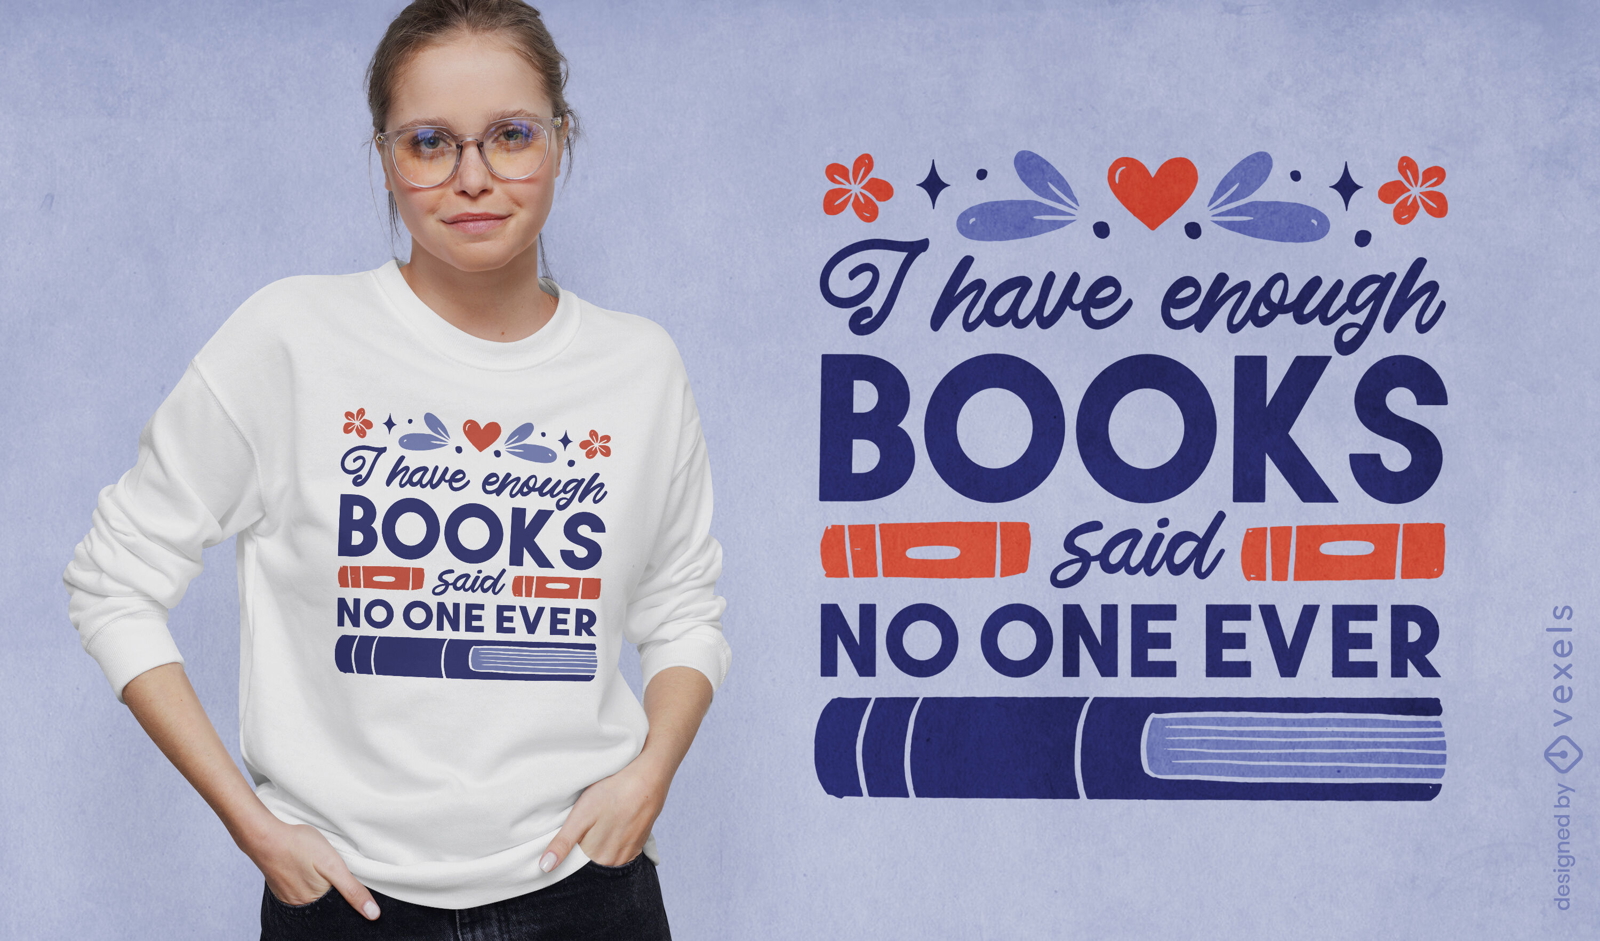 Suficientes libros citan dise?o de camiseta.